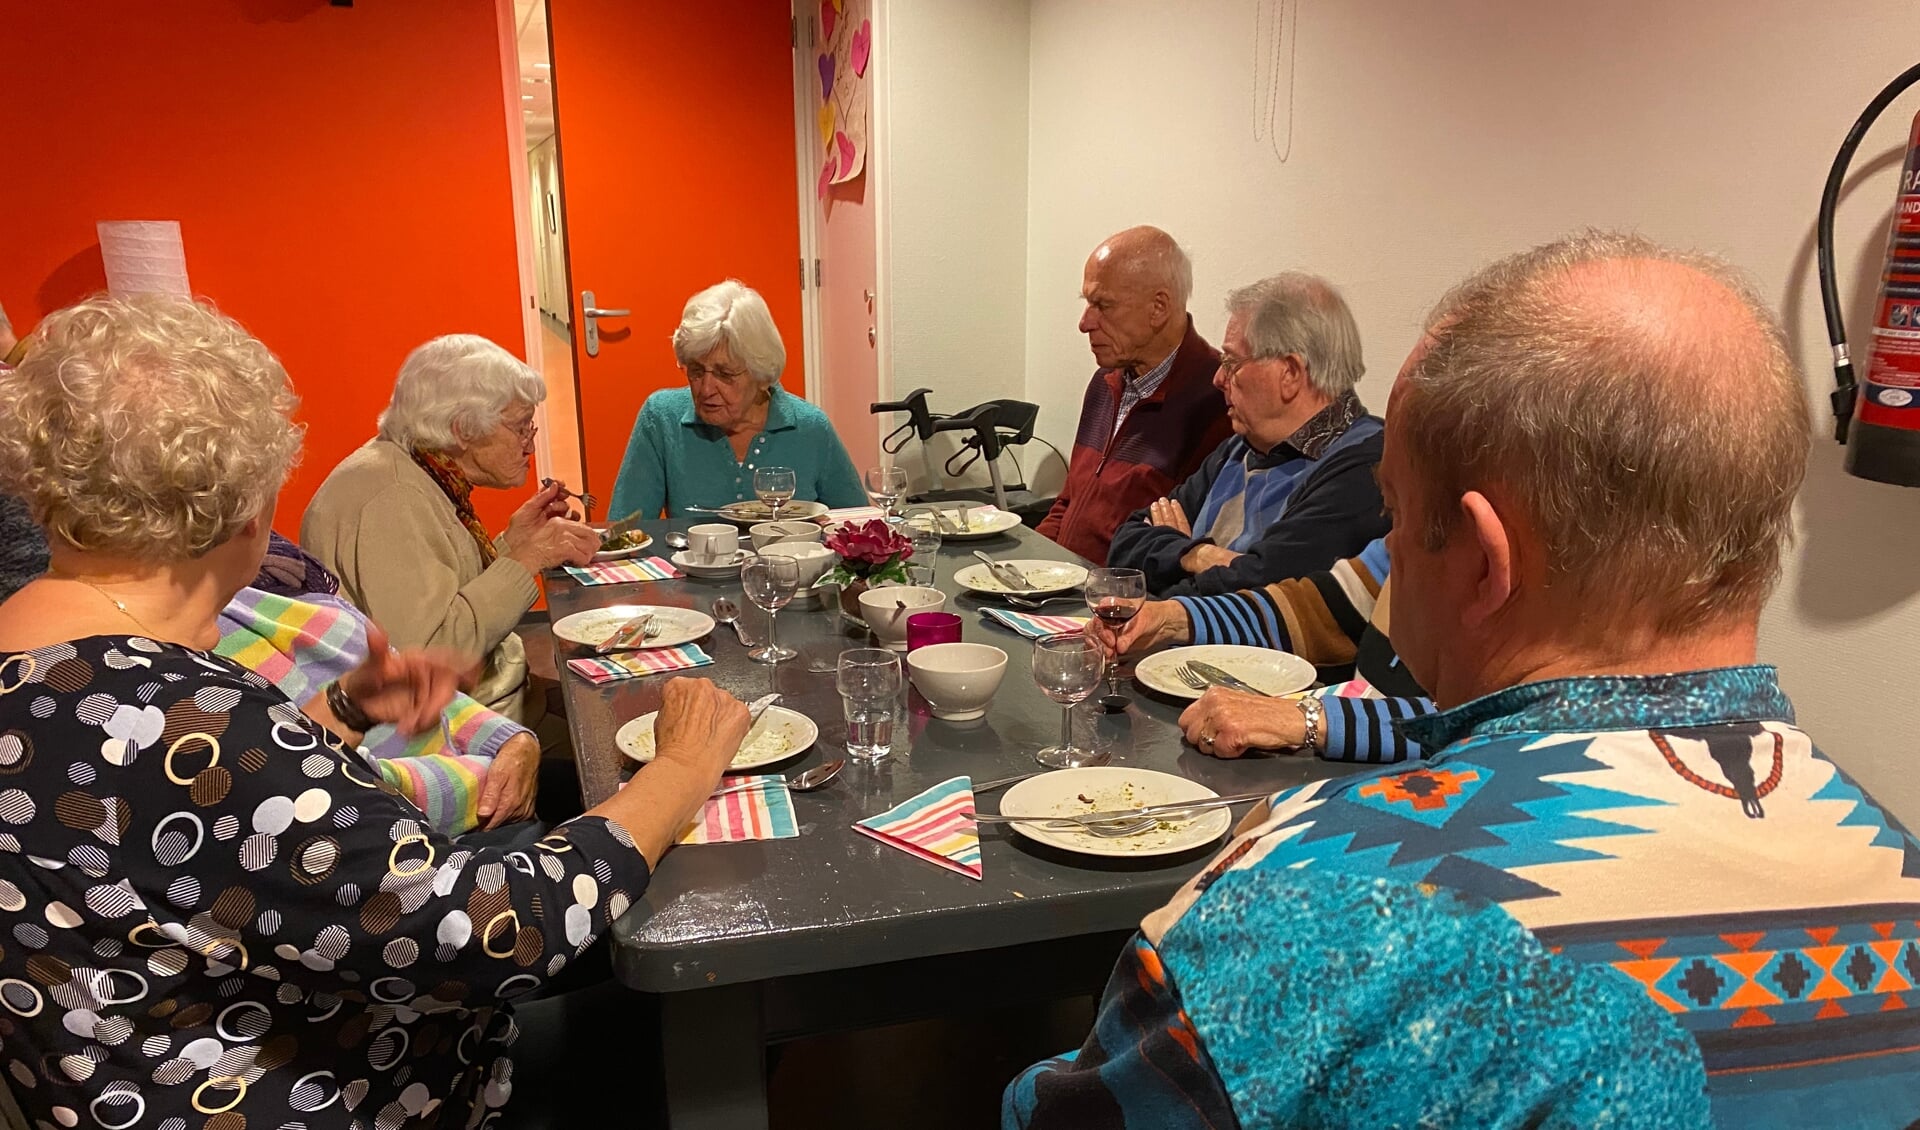 Iedereen - oud en jong - die het gezellig vindt om samen te kletsen en te eten is welkom bij Het Brede Dak in De Sprankel. Foto: PR